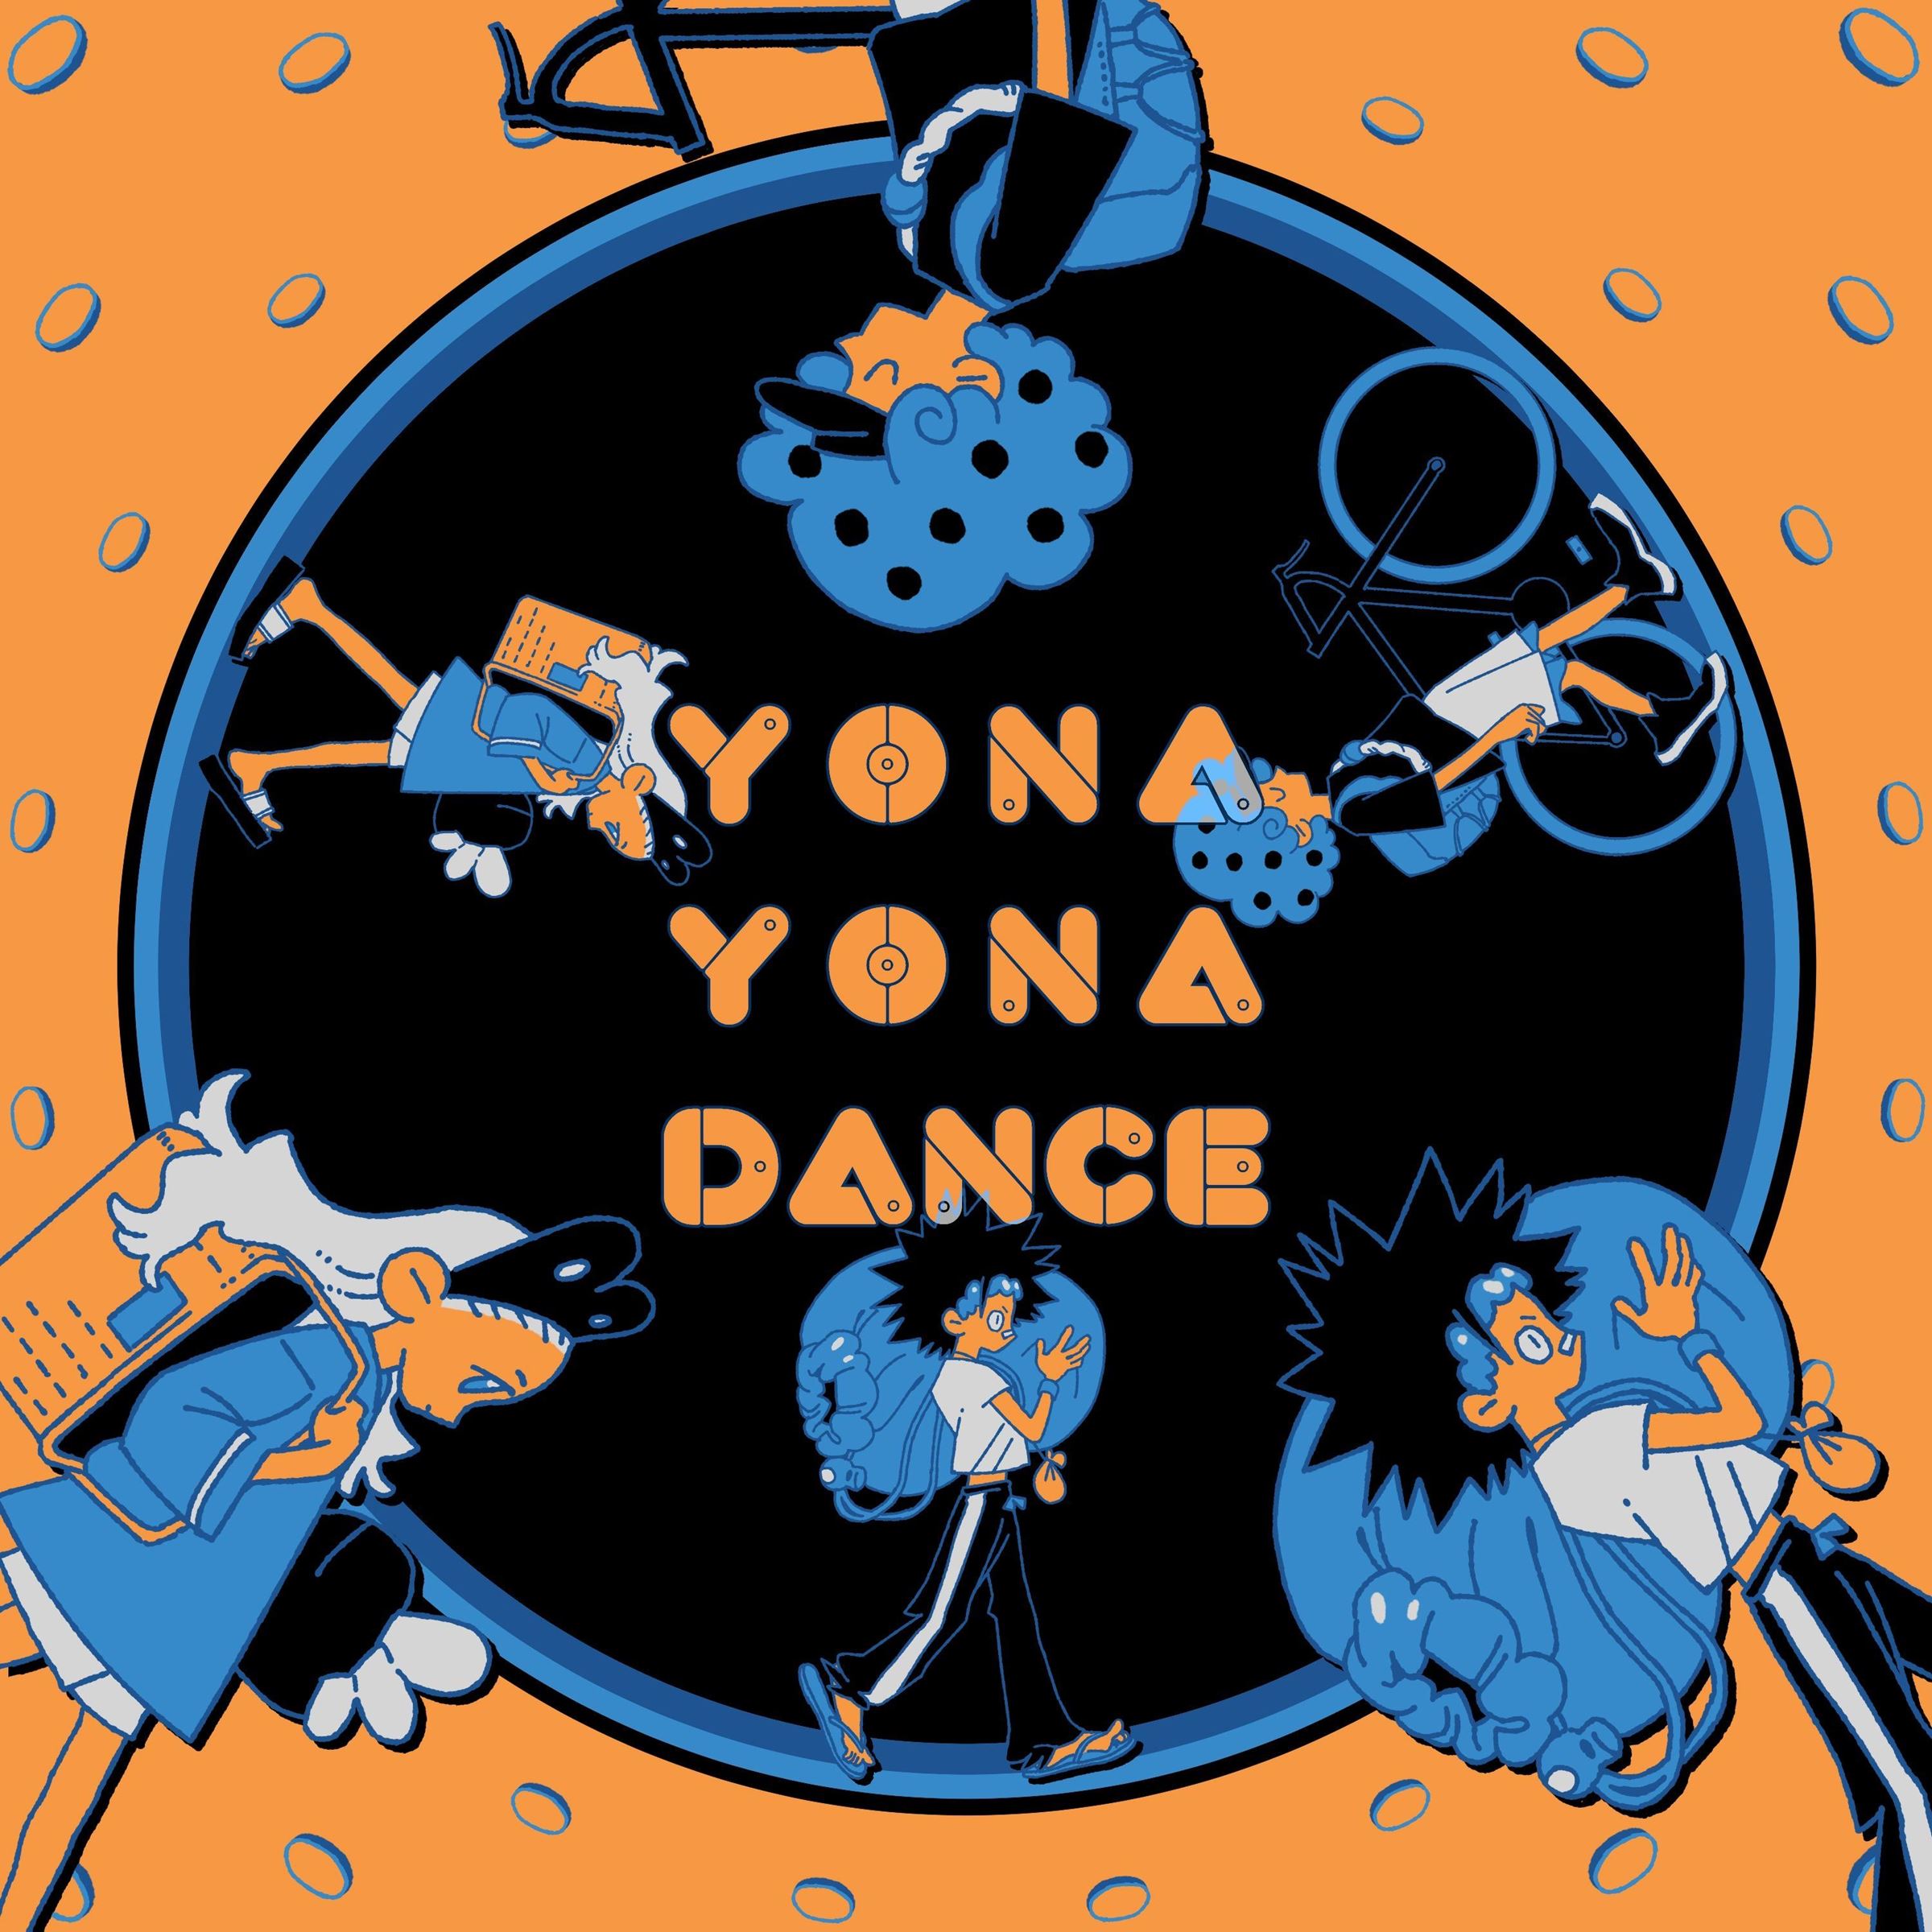 「YONA YONA DANCE」配信ジャケット